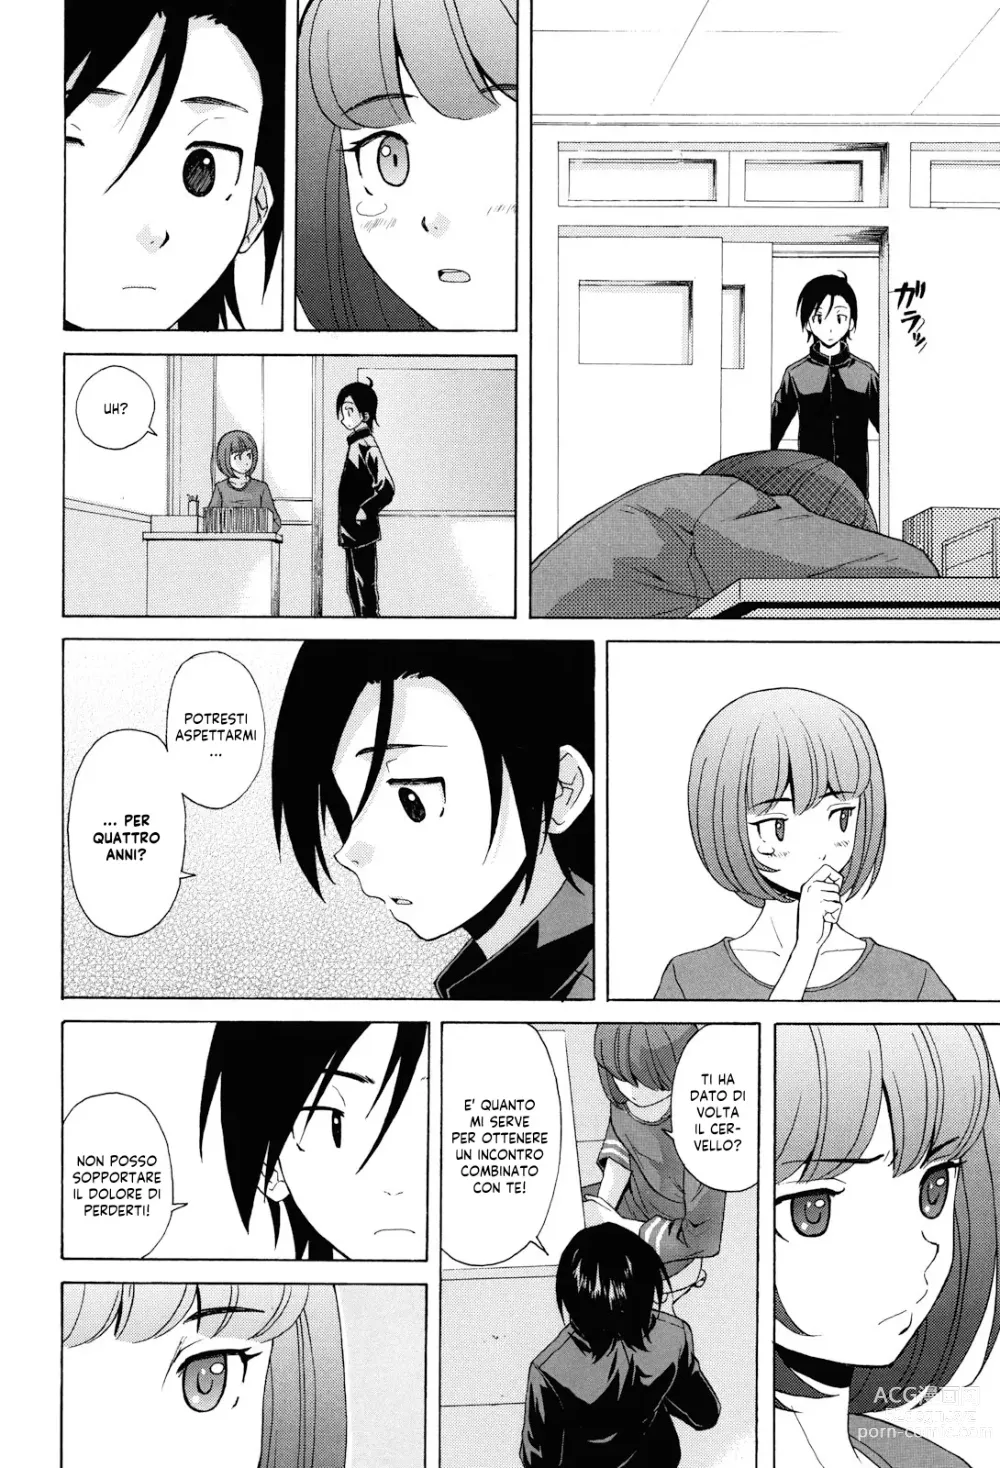 Page 241 of manga Sei Gentilmente Desiderato dalla tua Prof (decensored)